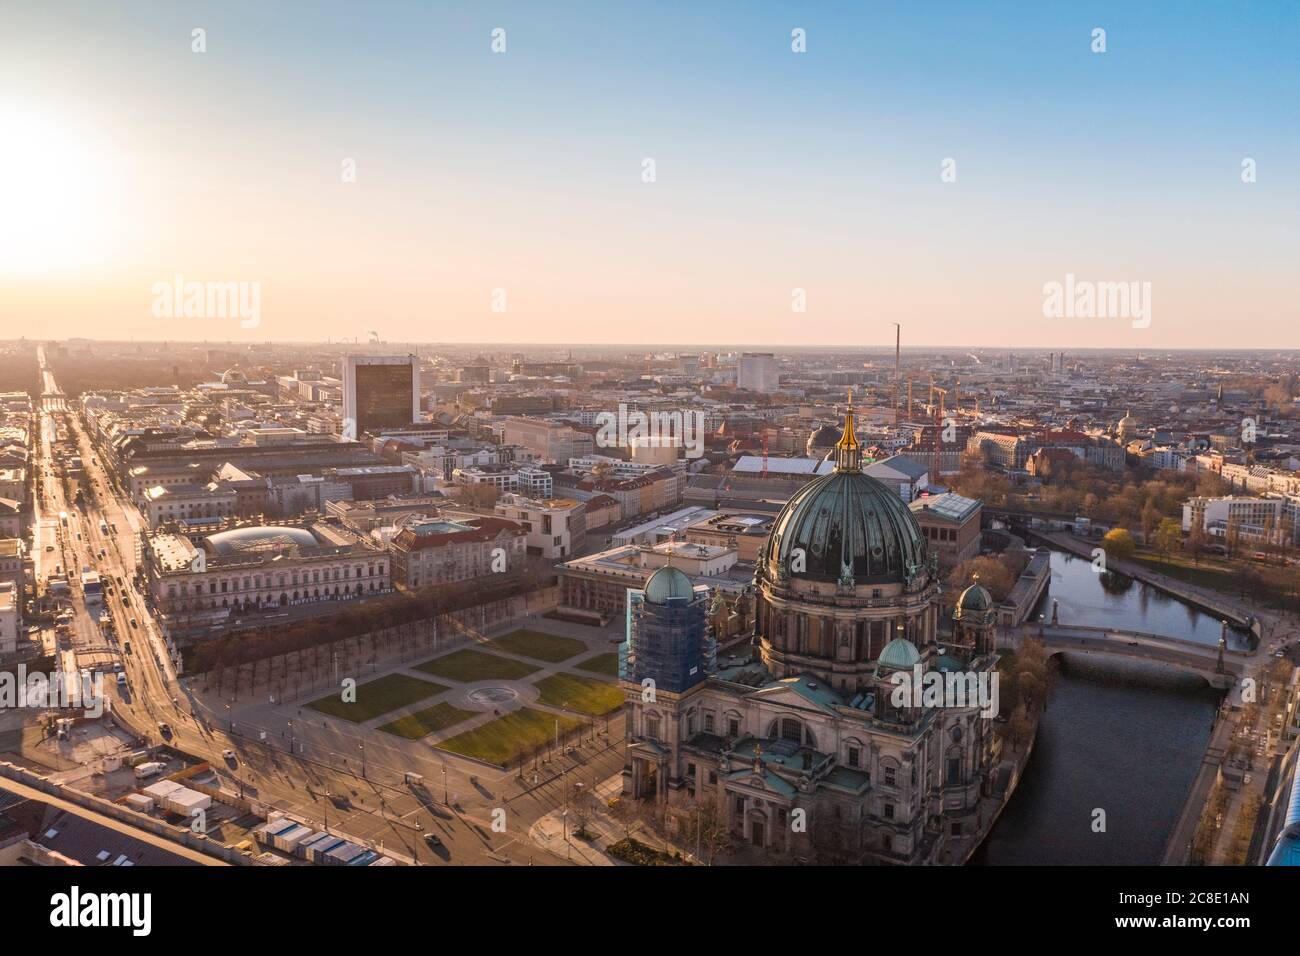 Allemagne, Berlin, vue aérienne de la cathédrale de Berlin et de l'île aux musées au coucher du soleil Banque D'Images